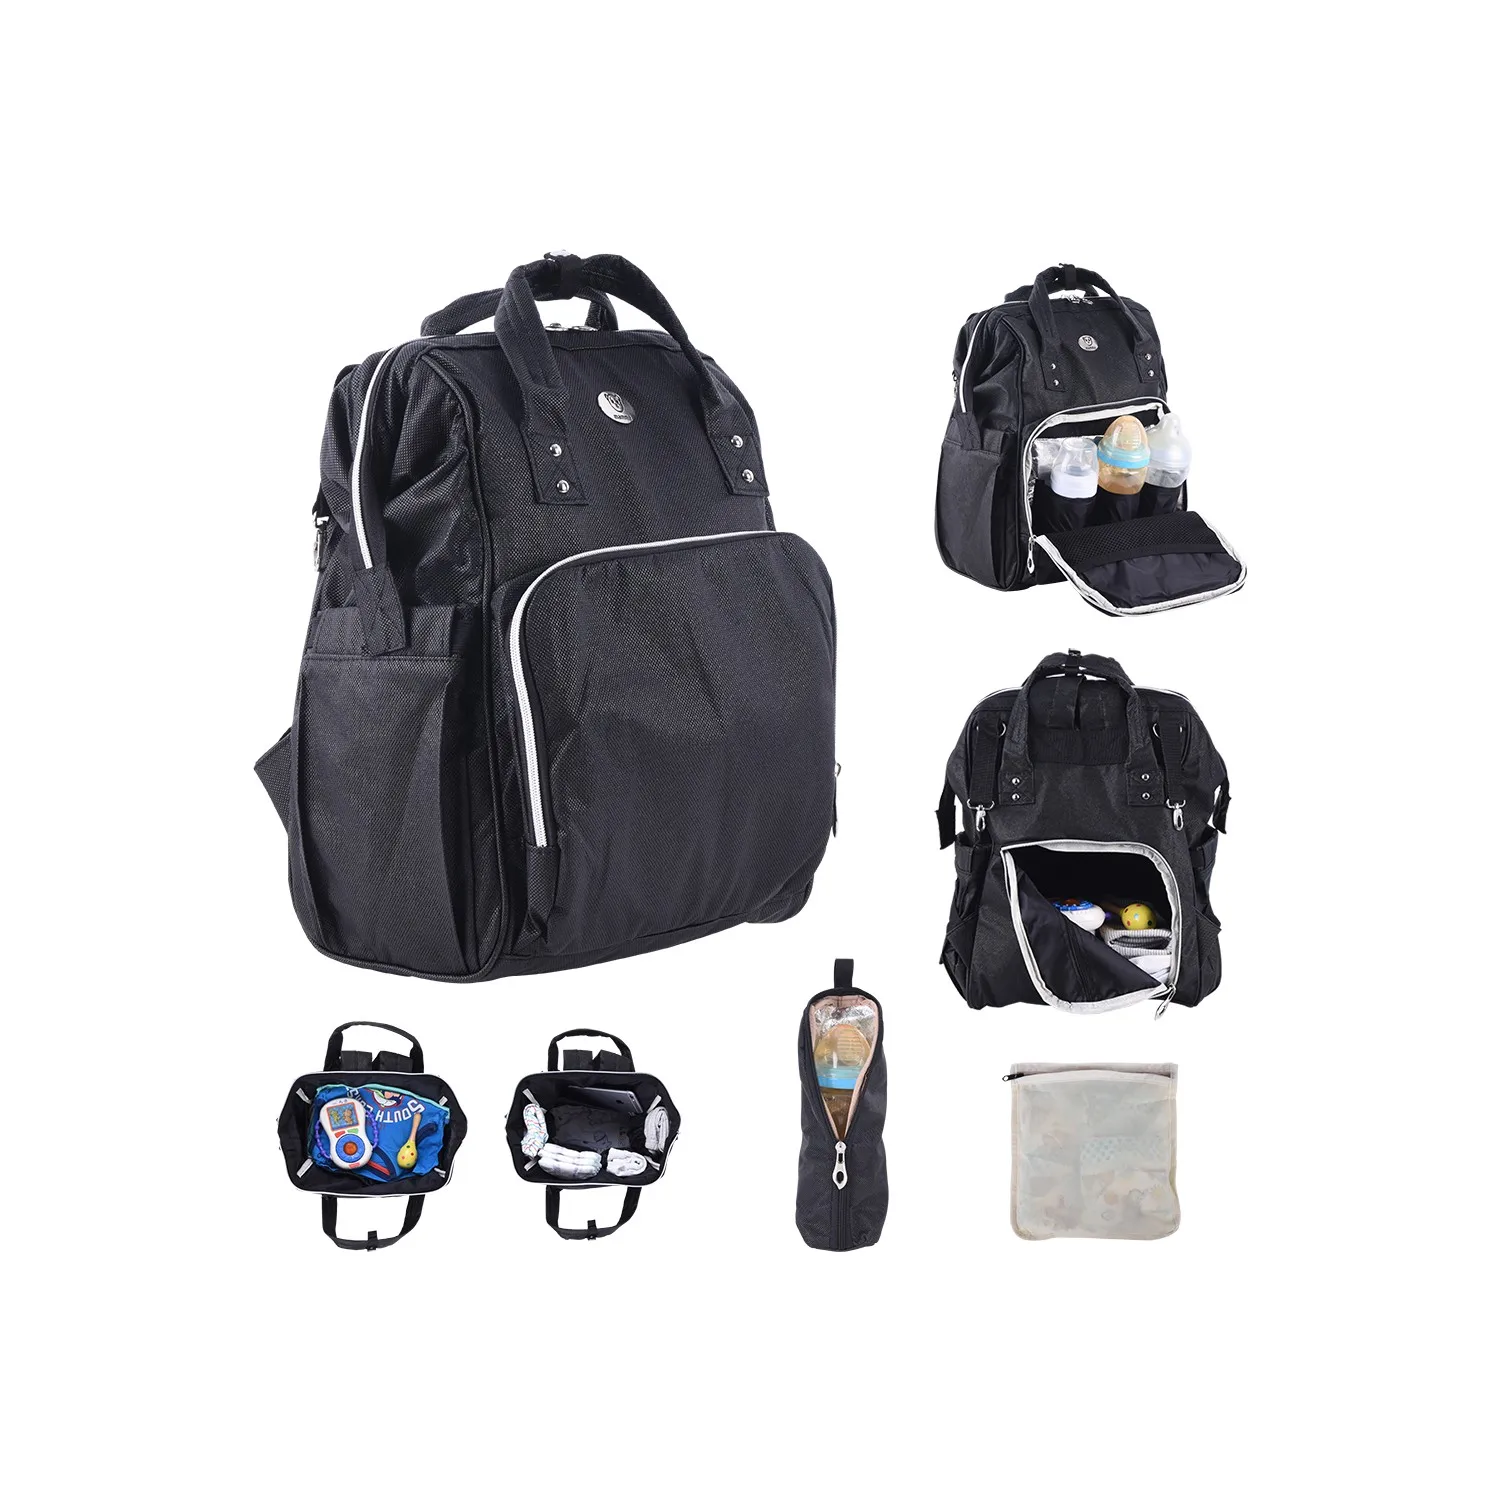 

рюкзак кенгуру для ребенка органайзер эргорюкзак для детской коляски, дорожная сумка для мамы, сумка для подгузников, сумка для мамы, детский Рюкзак голубого, черного и серого цвета для путешествий детский рюкзак пере